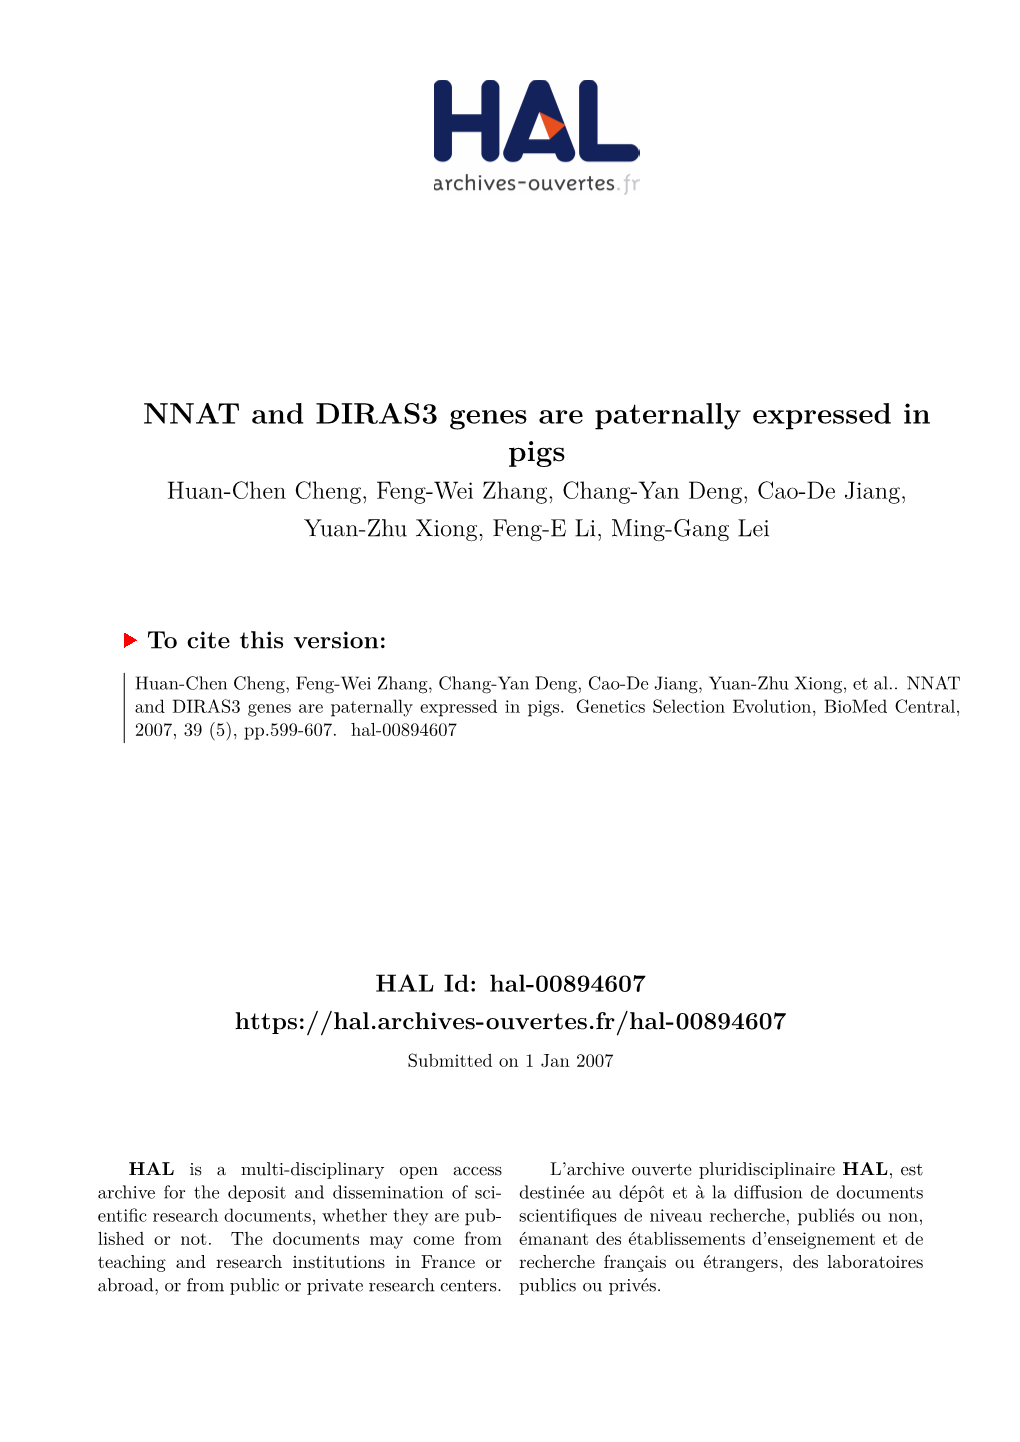 NNAT and DIRAS3 Genes Are Paternally Expressed in Pigs Huan-Chen Cheng, Feng-Wei Zhang, Chang-Yan Deng, Cao-De Jiang, Yuan-Zhu Xiong, Feng-E Li, Ming-Gang Lei